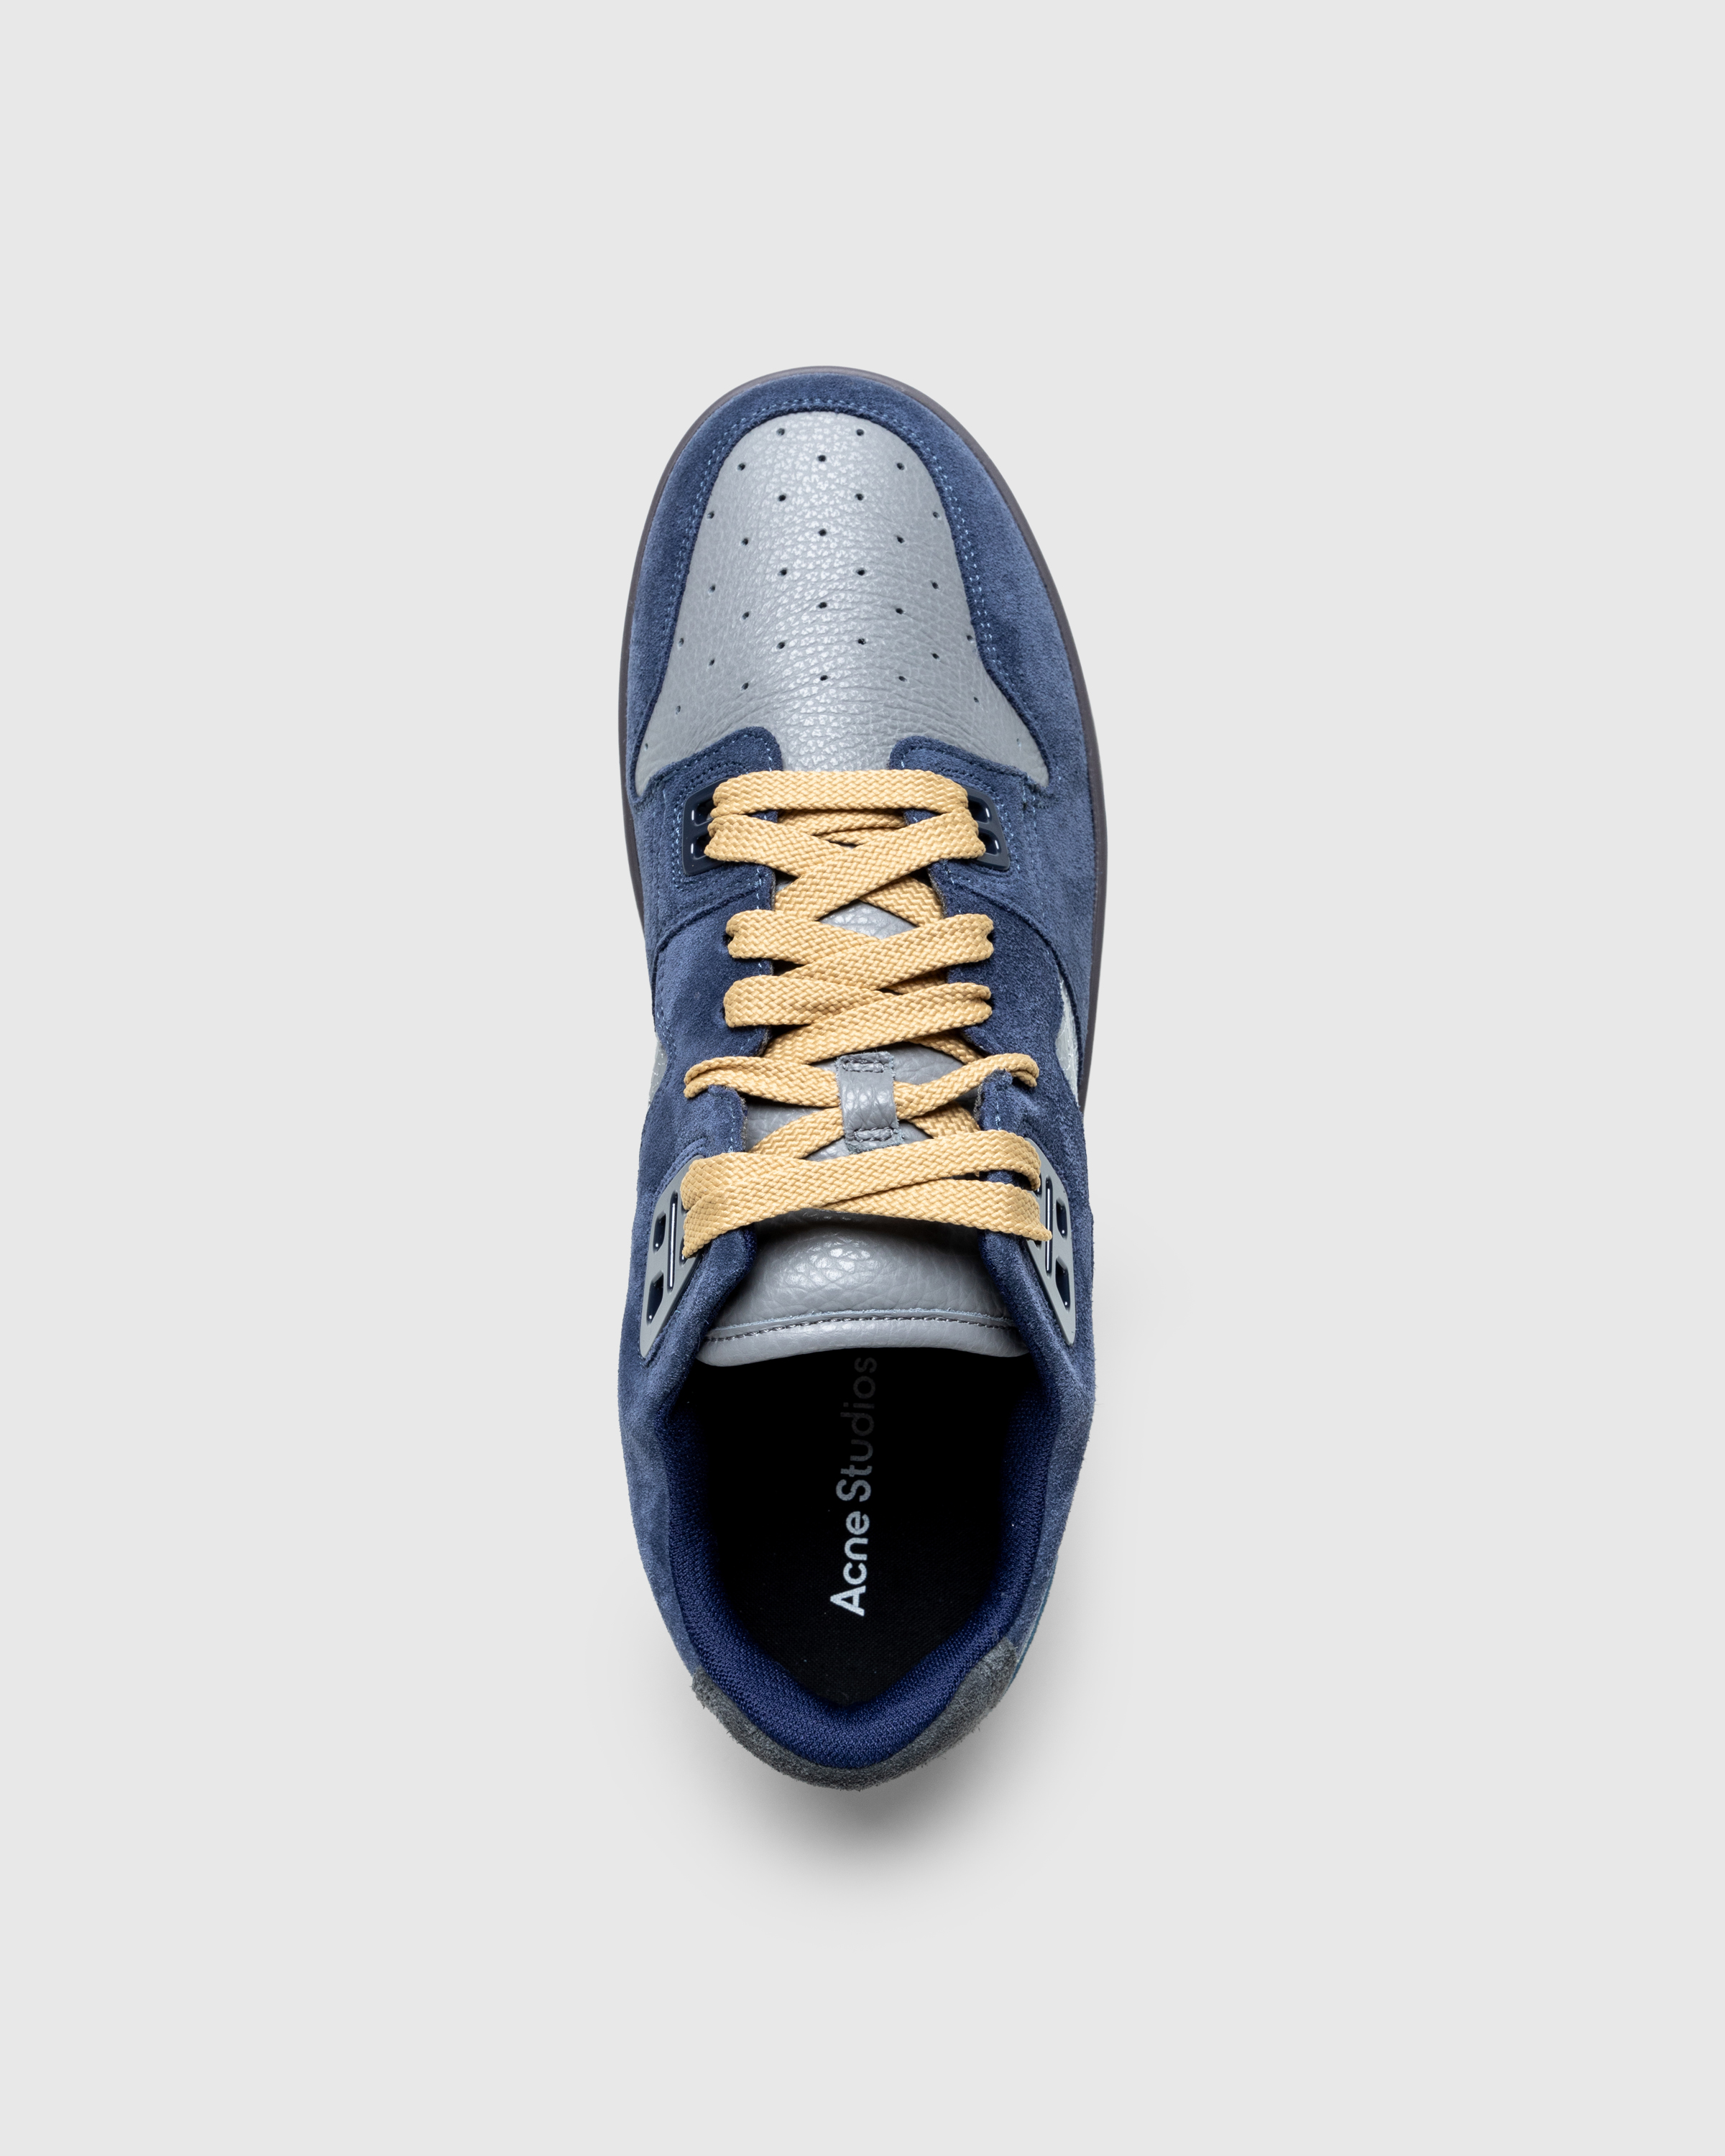 Acne Studios – Low-Top Sneakers Grey Blue - Sneakers - Blue - Image 5